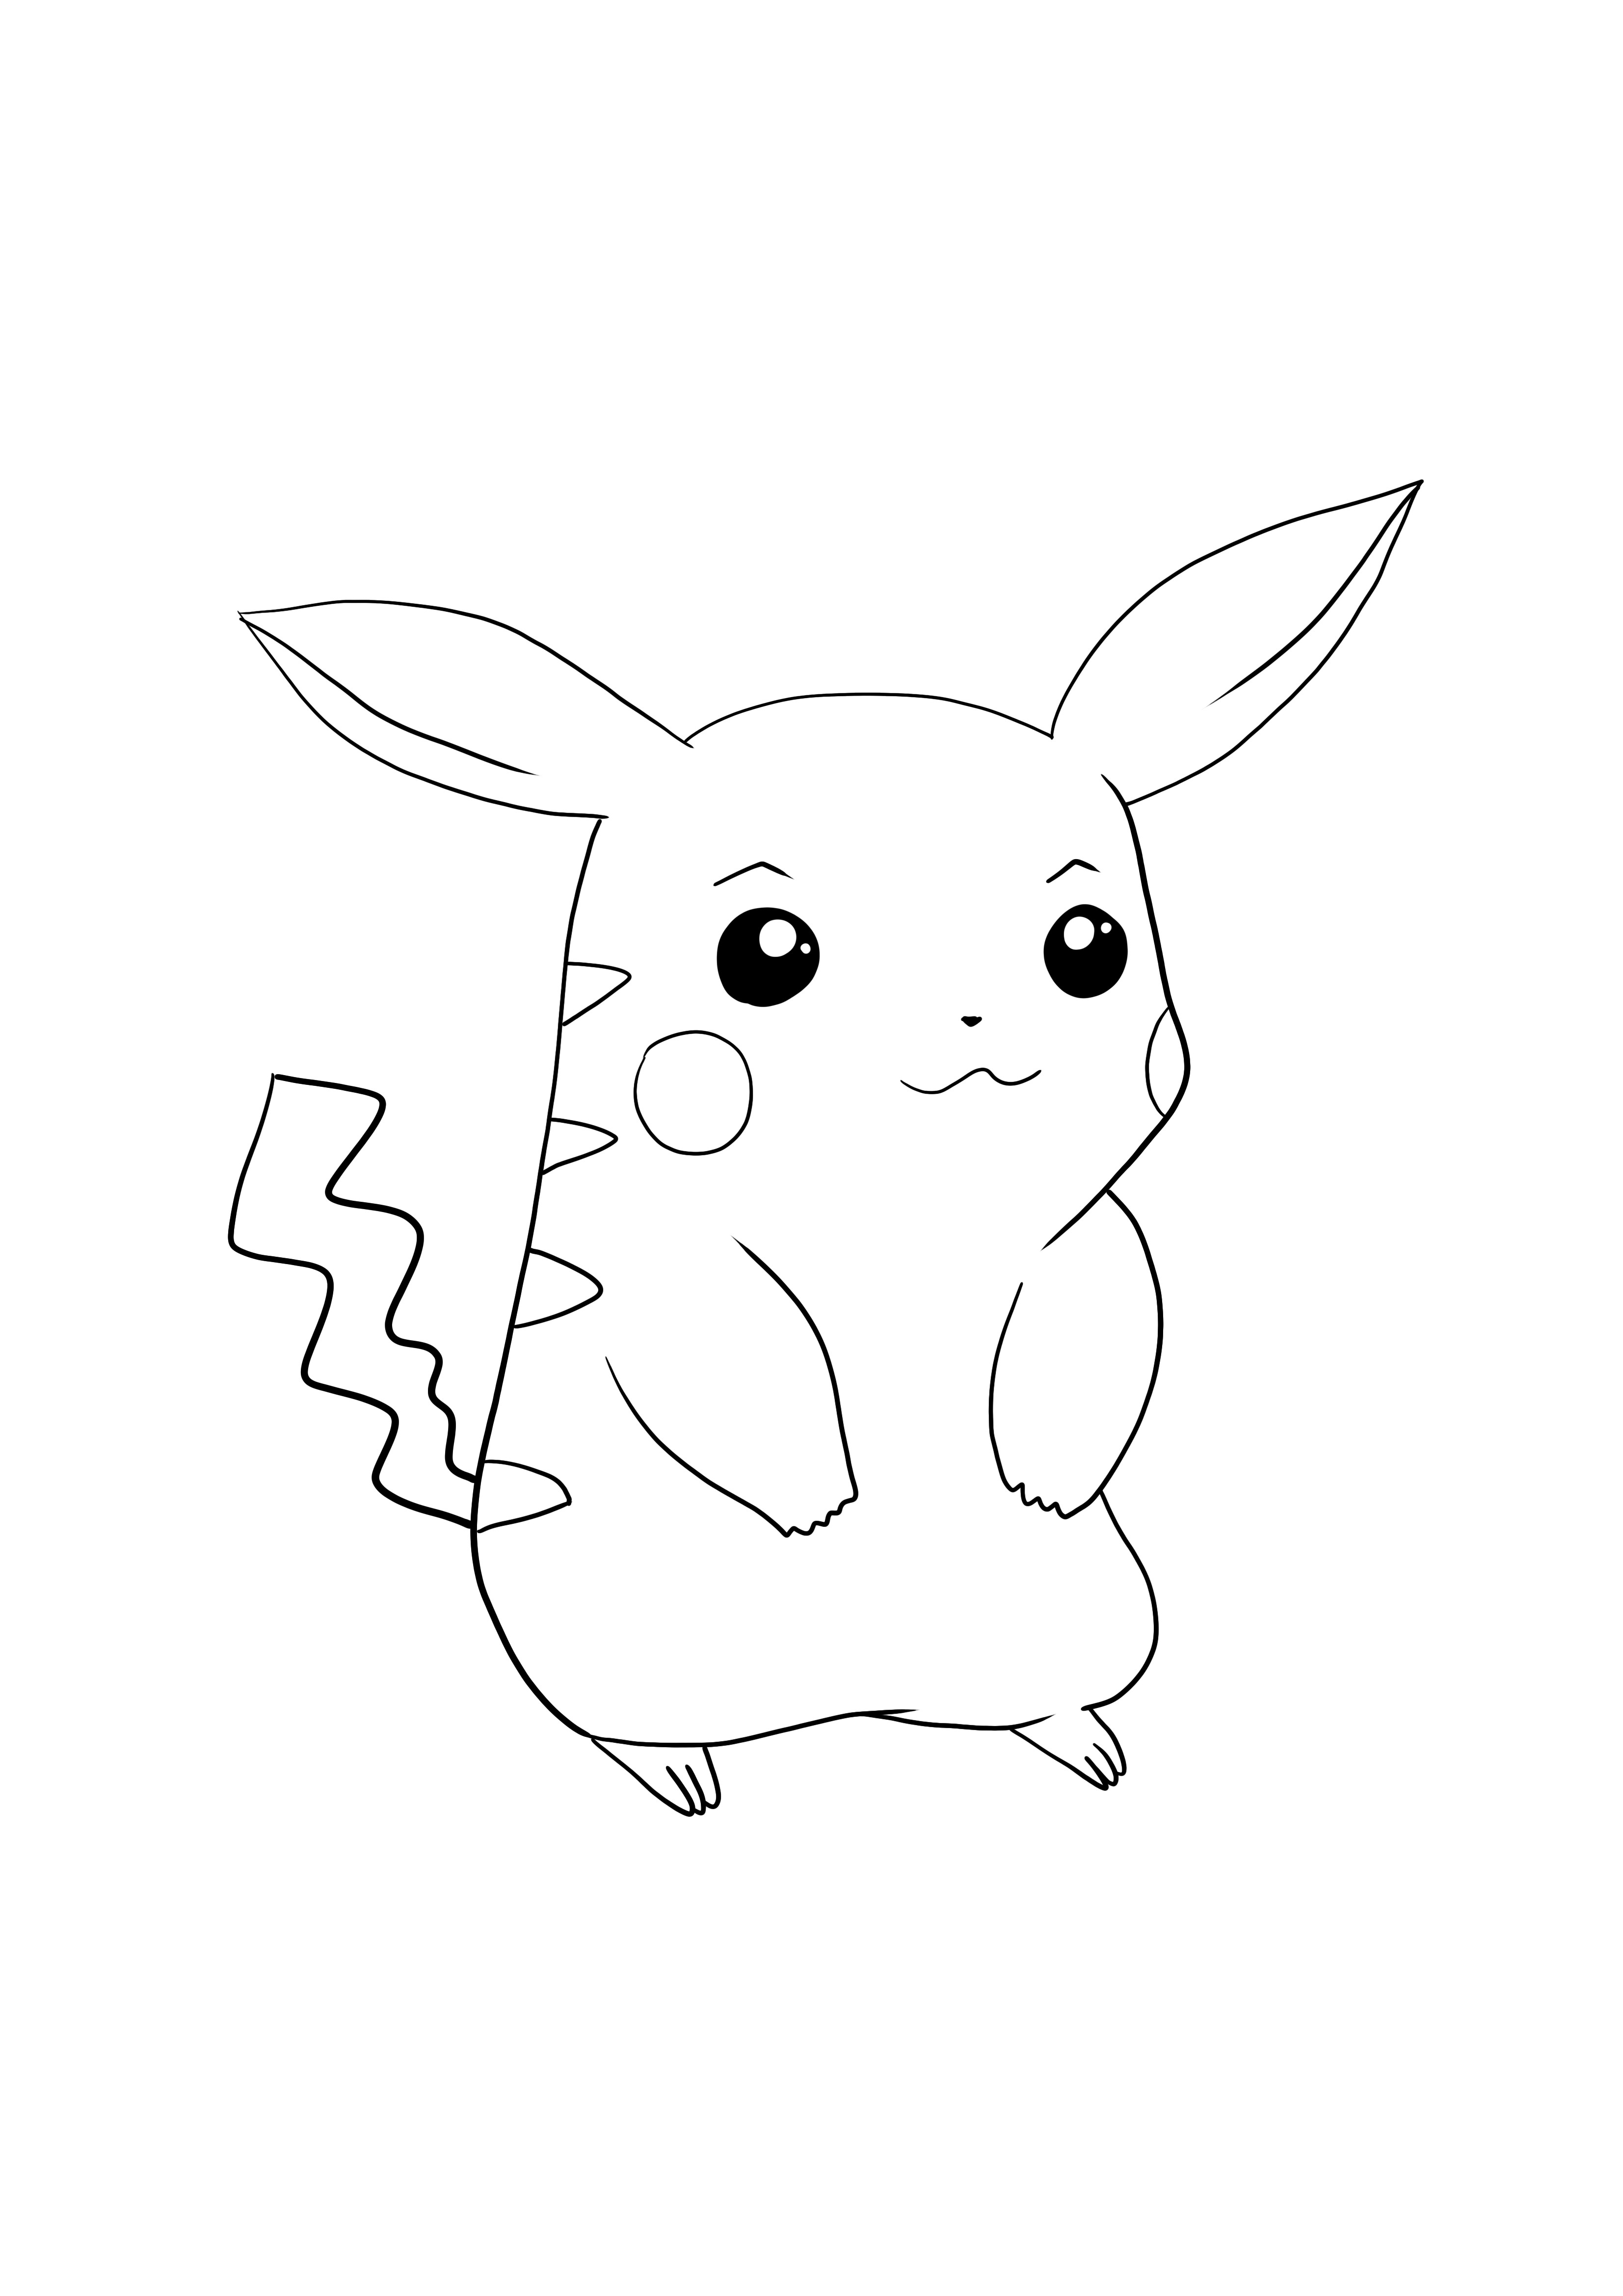 Pikachu-Pokémon go pobierz i pokoloruj za darmo